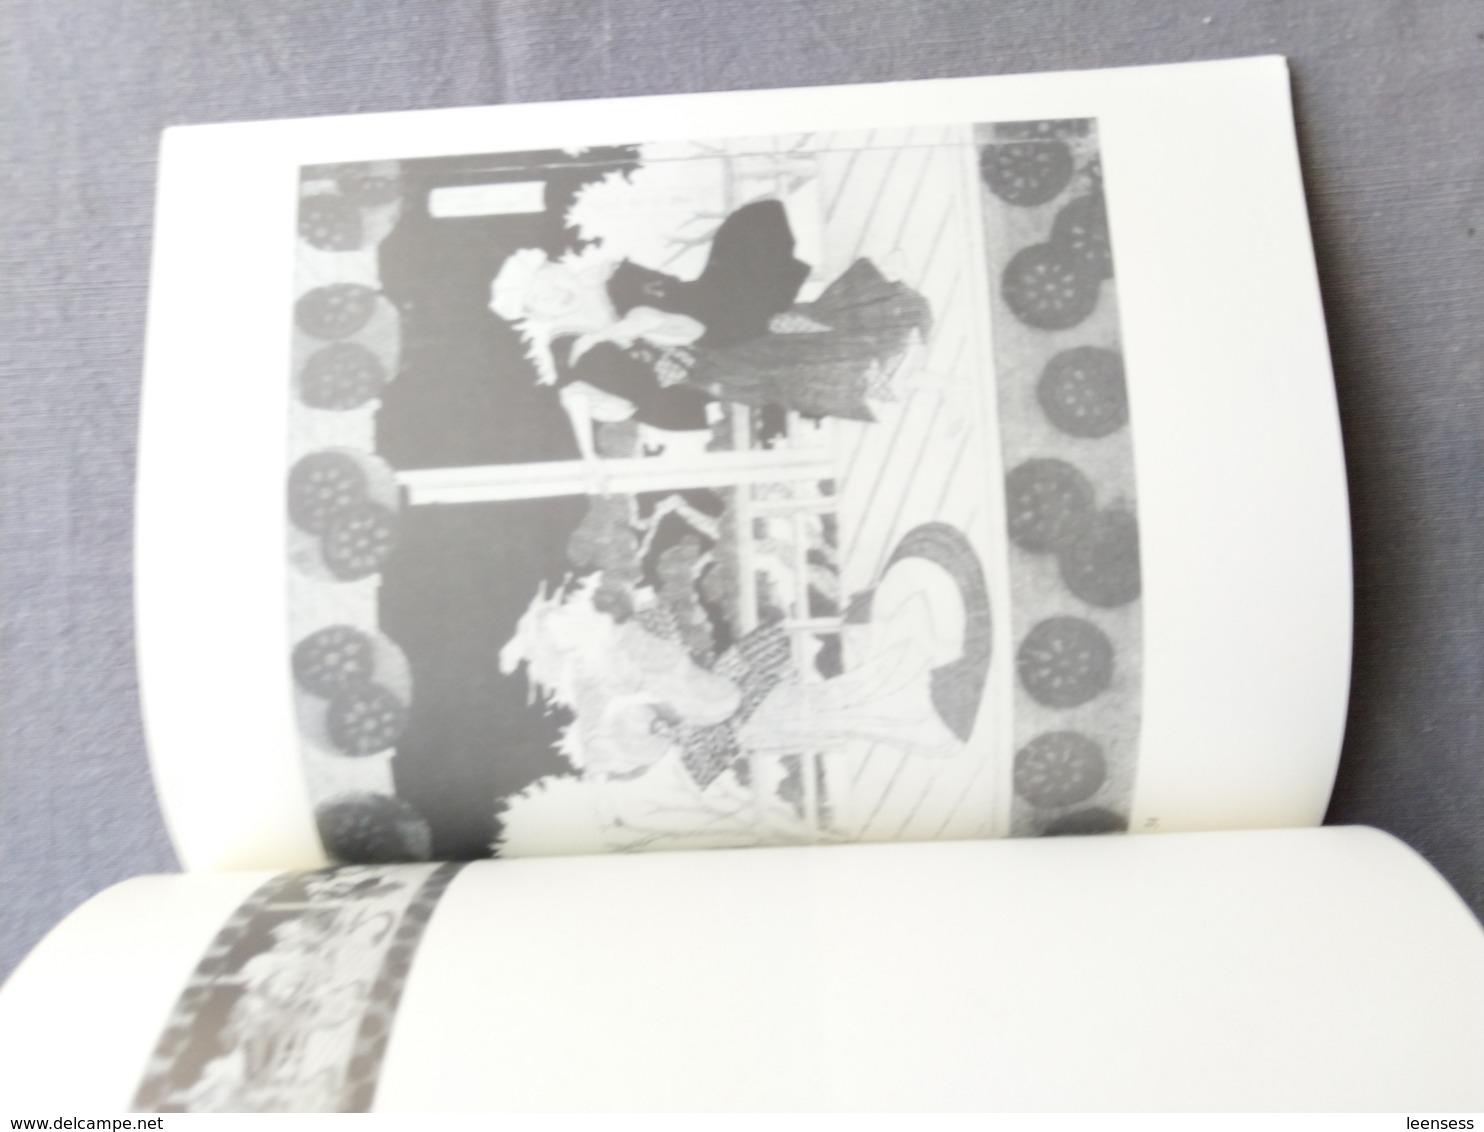 Koninklijke Bibliotheek Van Belgie; 18de & 19de- Eeuwse Japanse Prenten En Boeken; Catalogus Tentoonstelling. 1989. - Geschiedenis